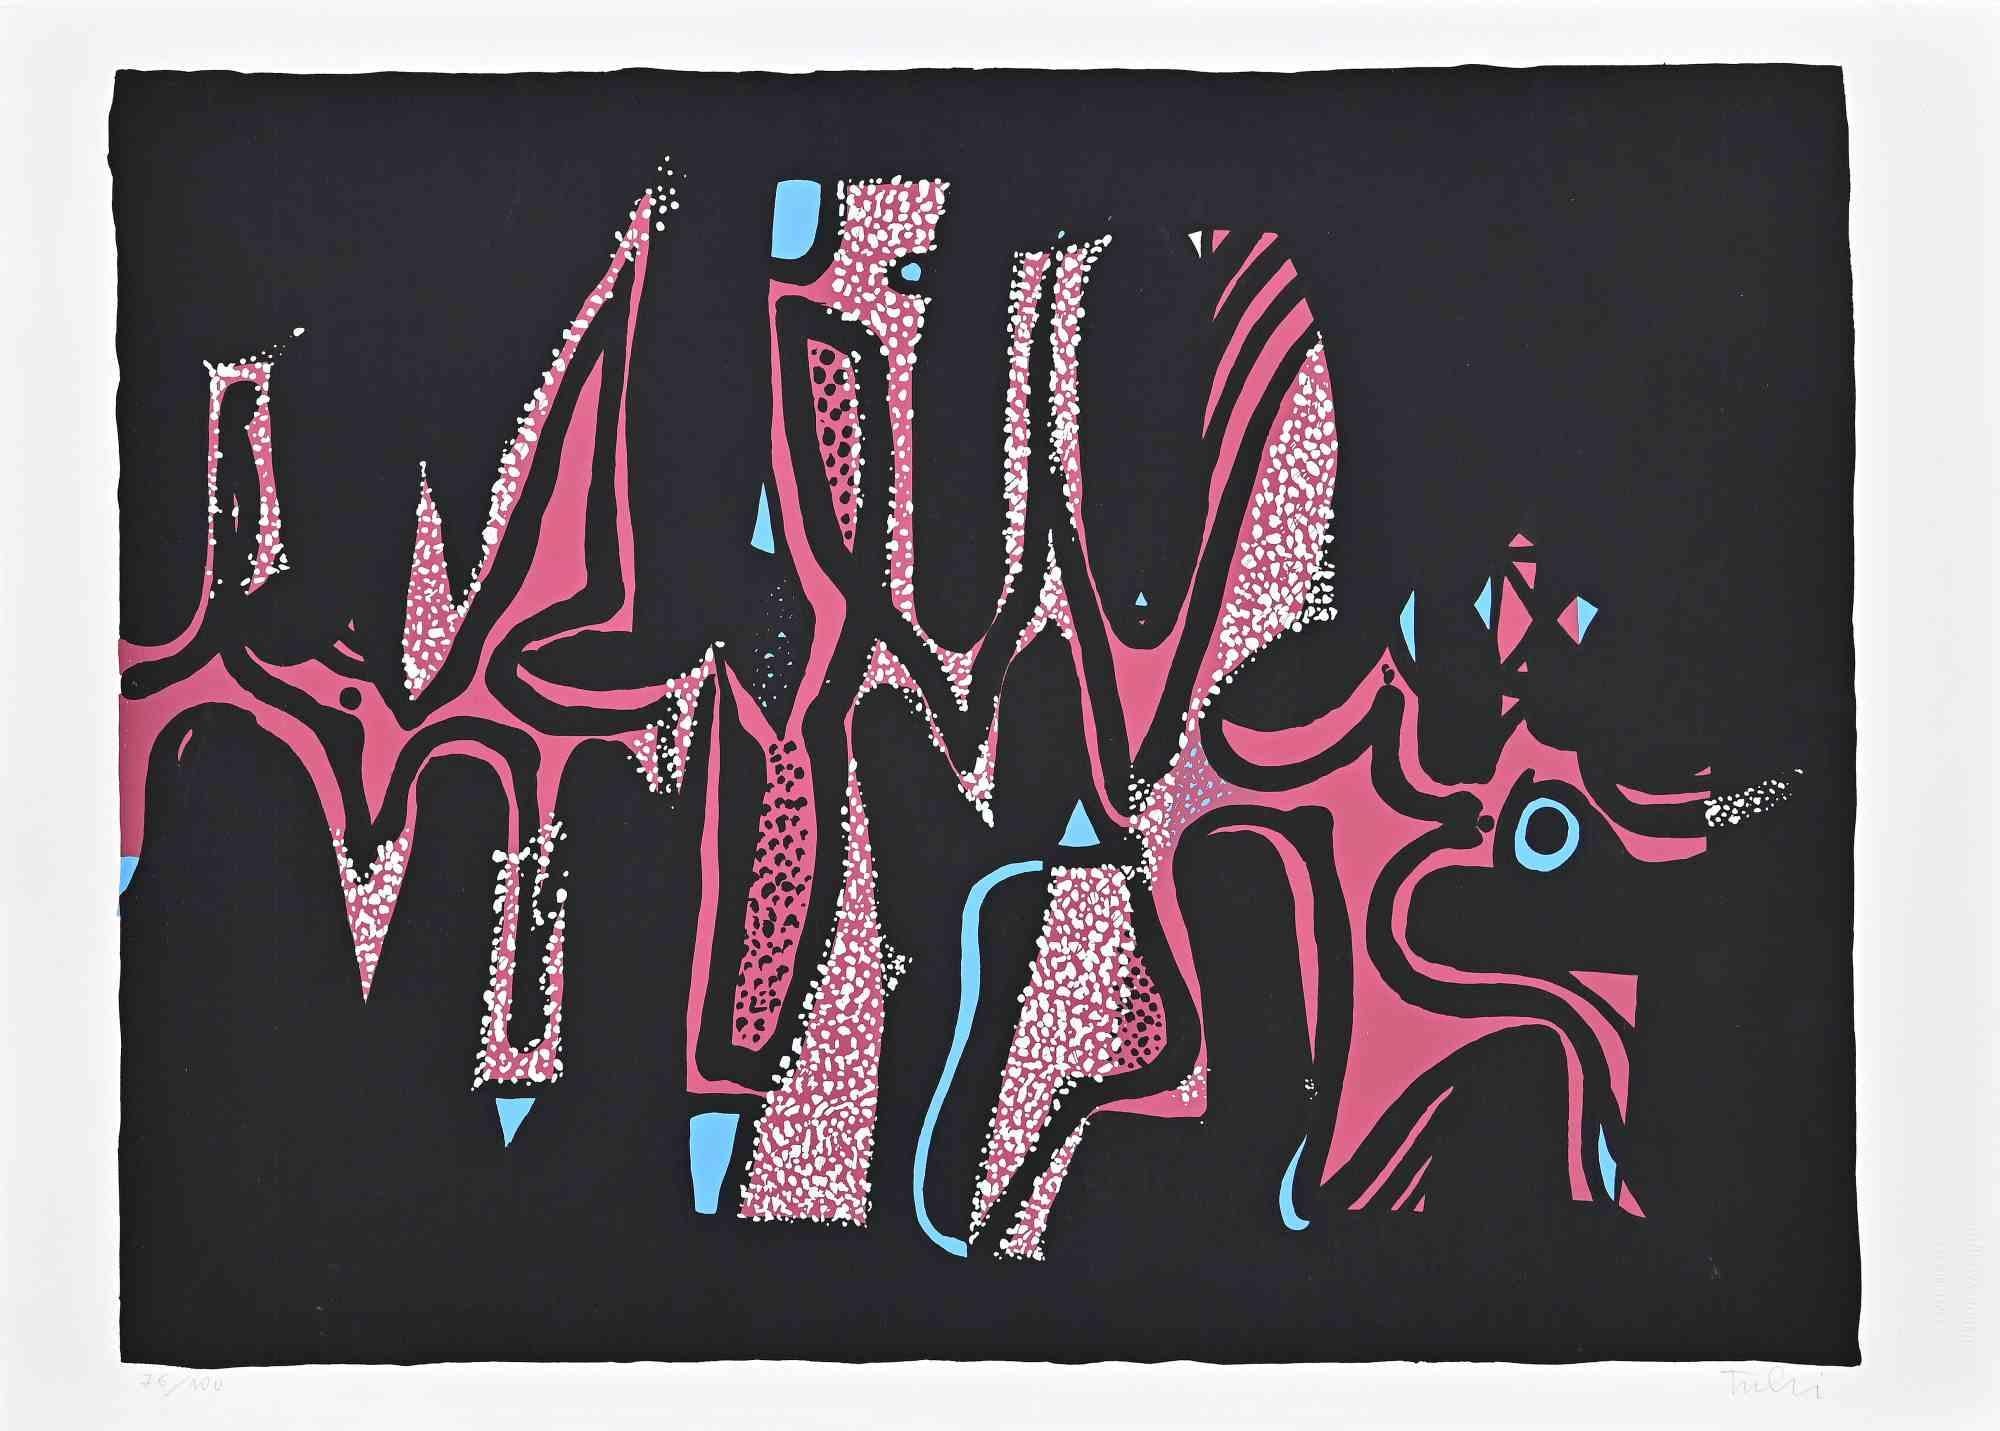 Composition carnavalesque est une sérigraphie colorée sur papier, réalisée en 1973 par l'artiste italien Wladimiro Tulli.

Signé à la main en bas à droite.

Numéroté, édition de 76/100.

Une belle œuvre d'art représentant une composition abstraite à